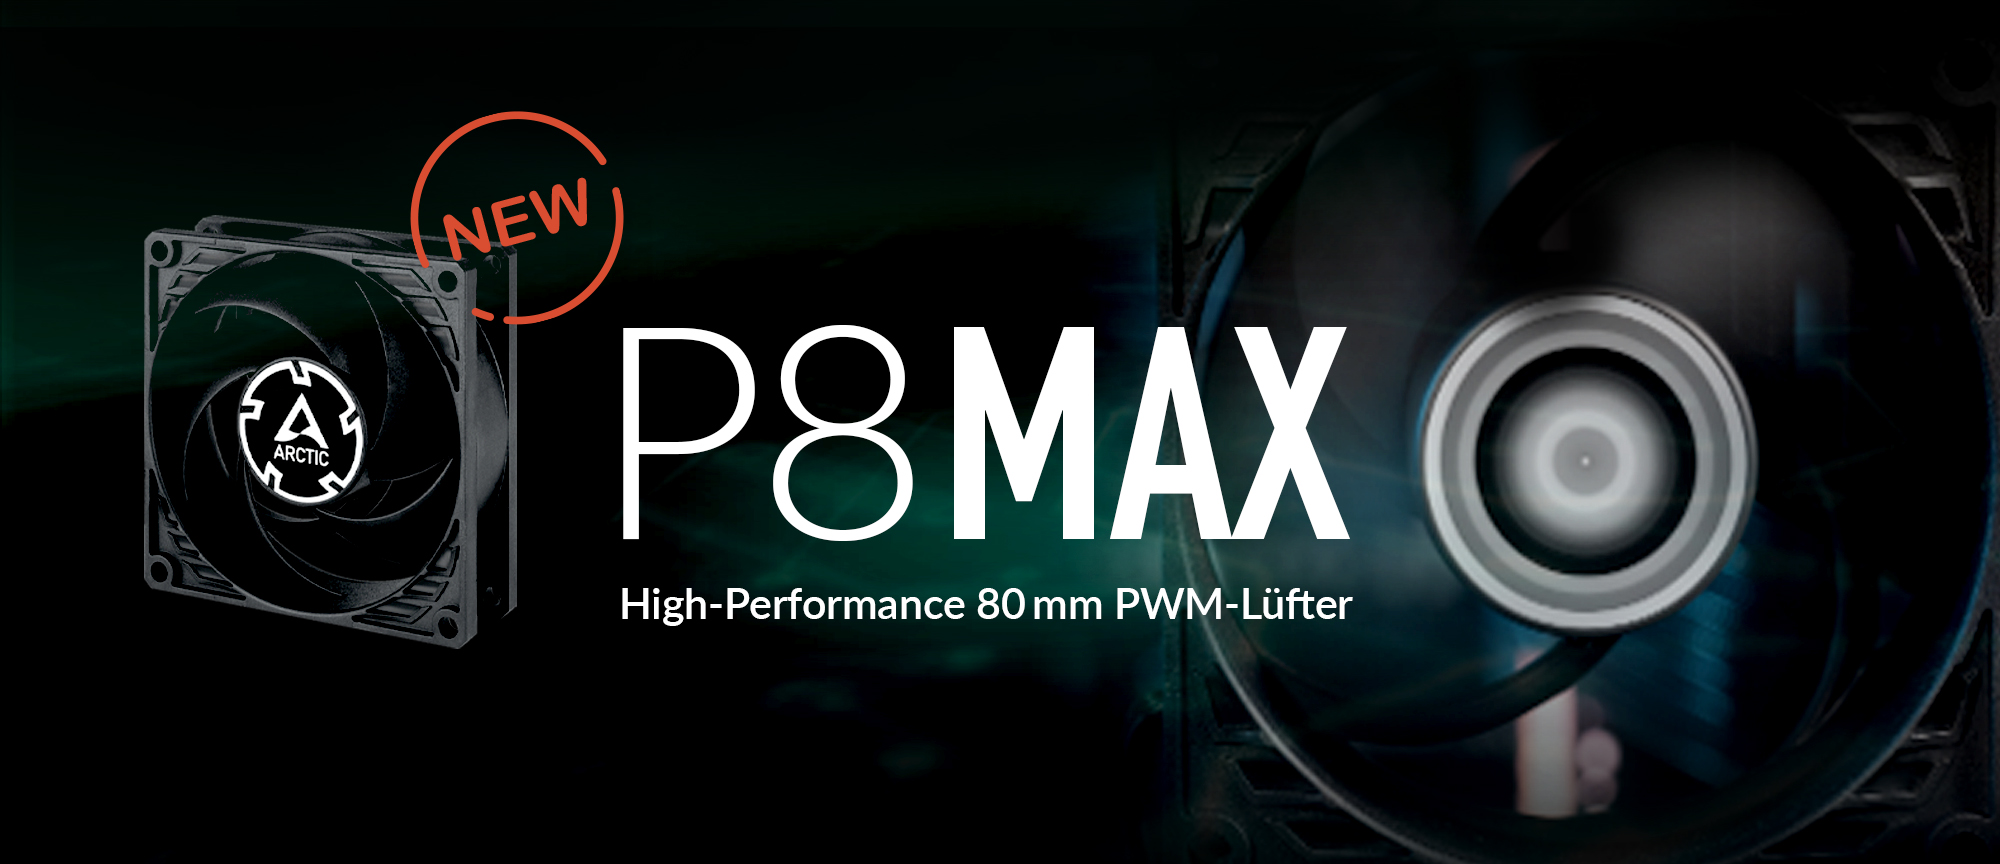 PR, ARCTIC introduces new P8 Max Fan